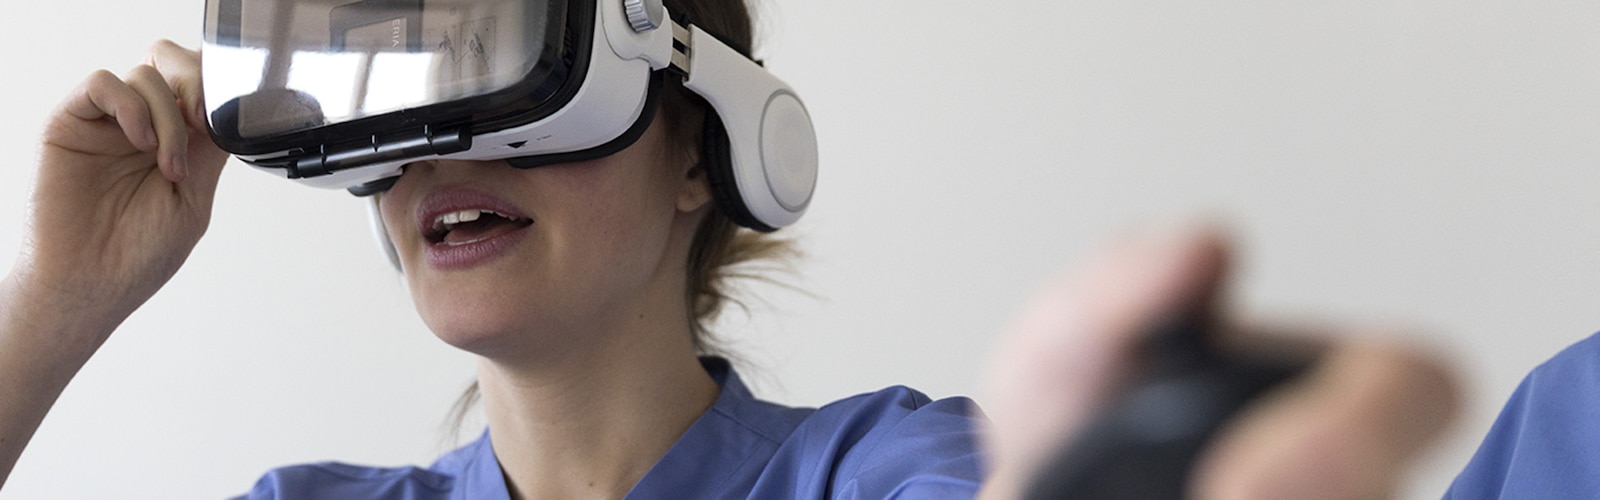 Enfermera con unas gafas de realidad virtual puestas